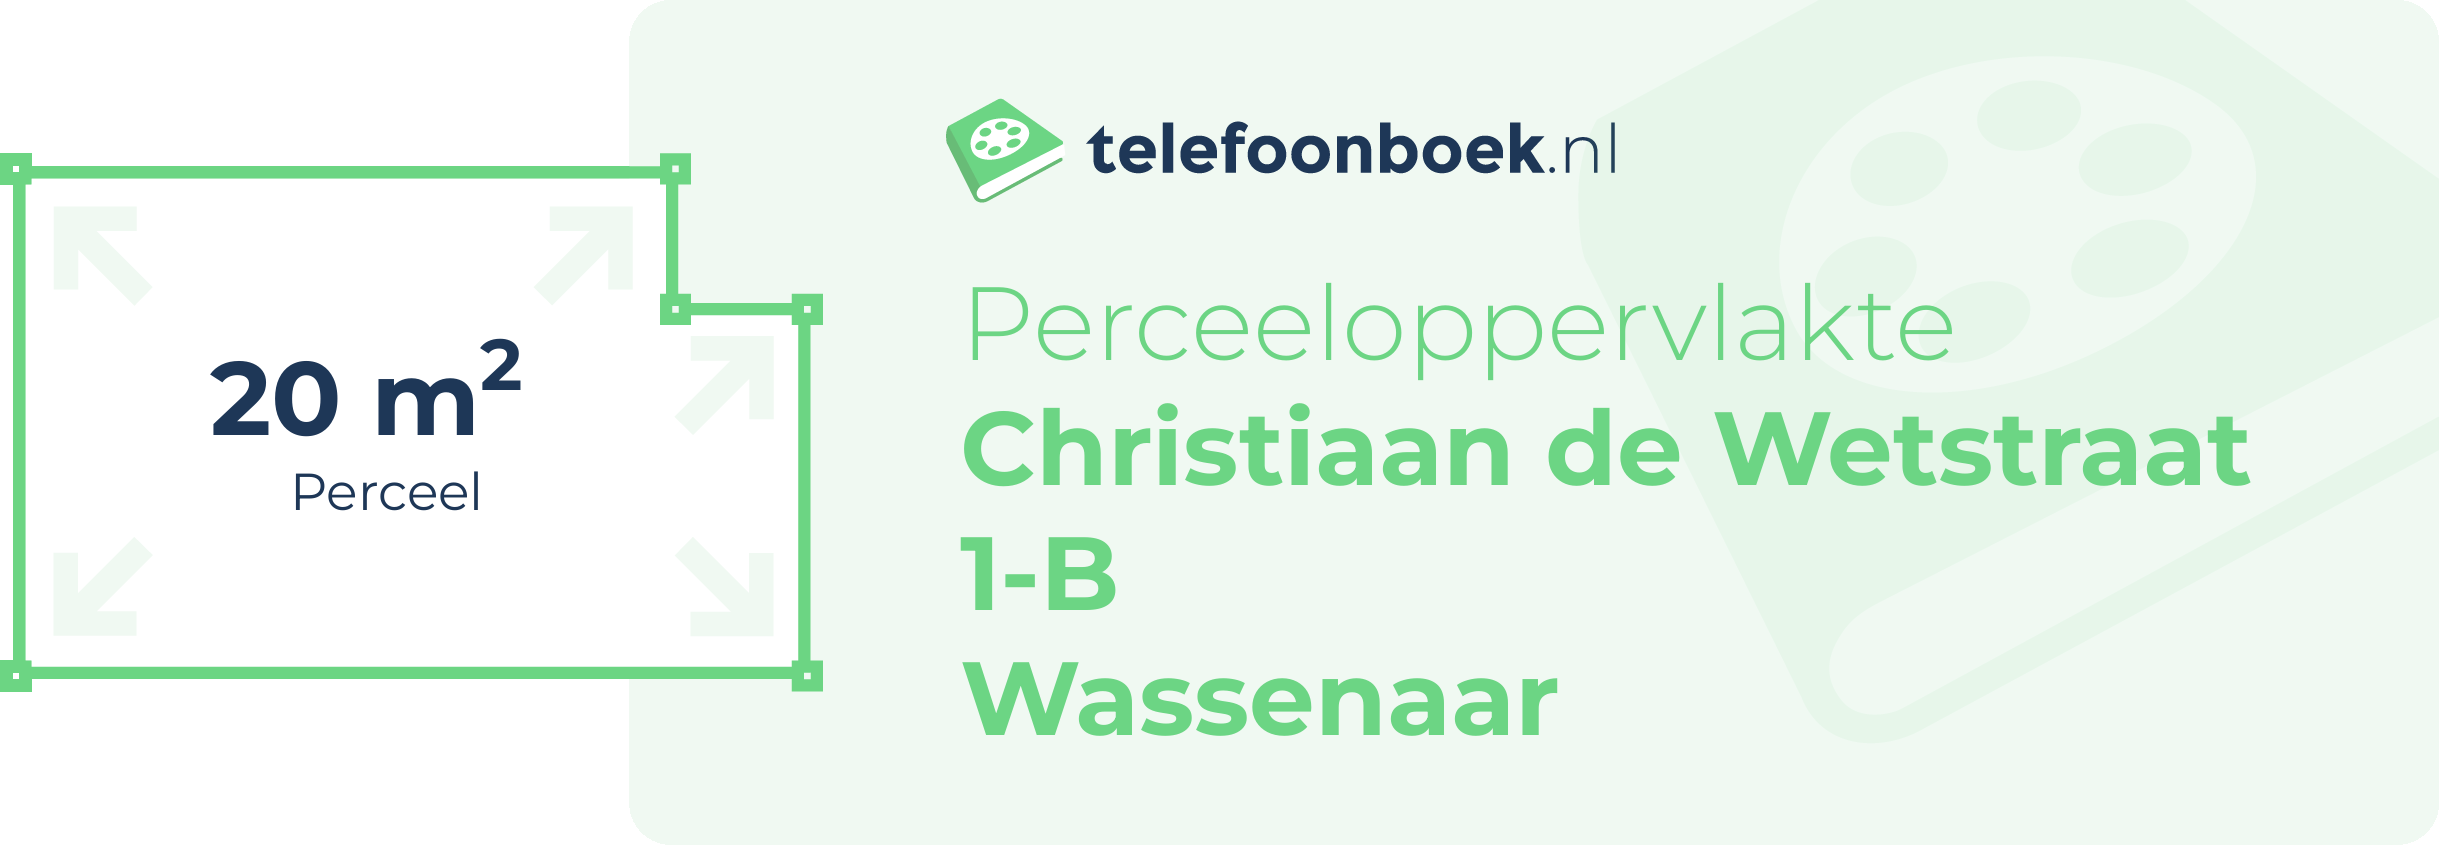 Perceeloppervlakte Christiaan De Wetstraat 1-B Wassenaar